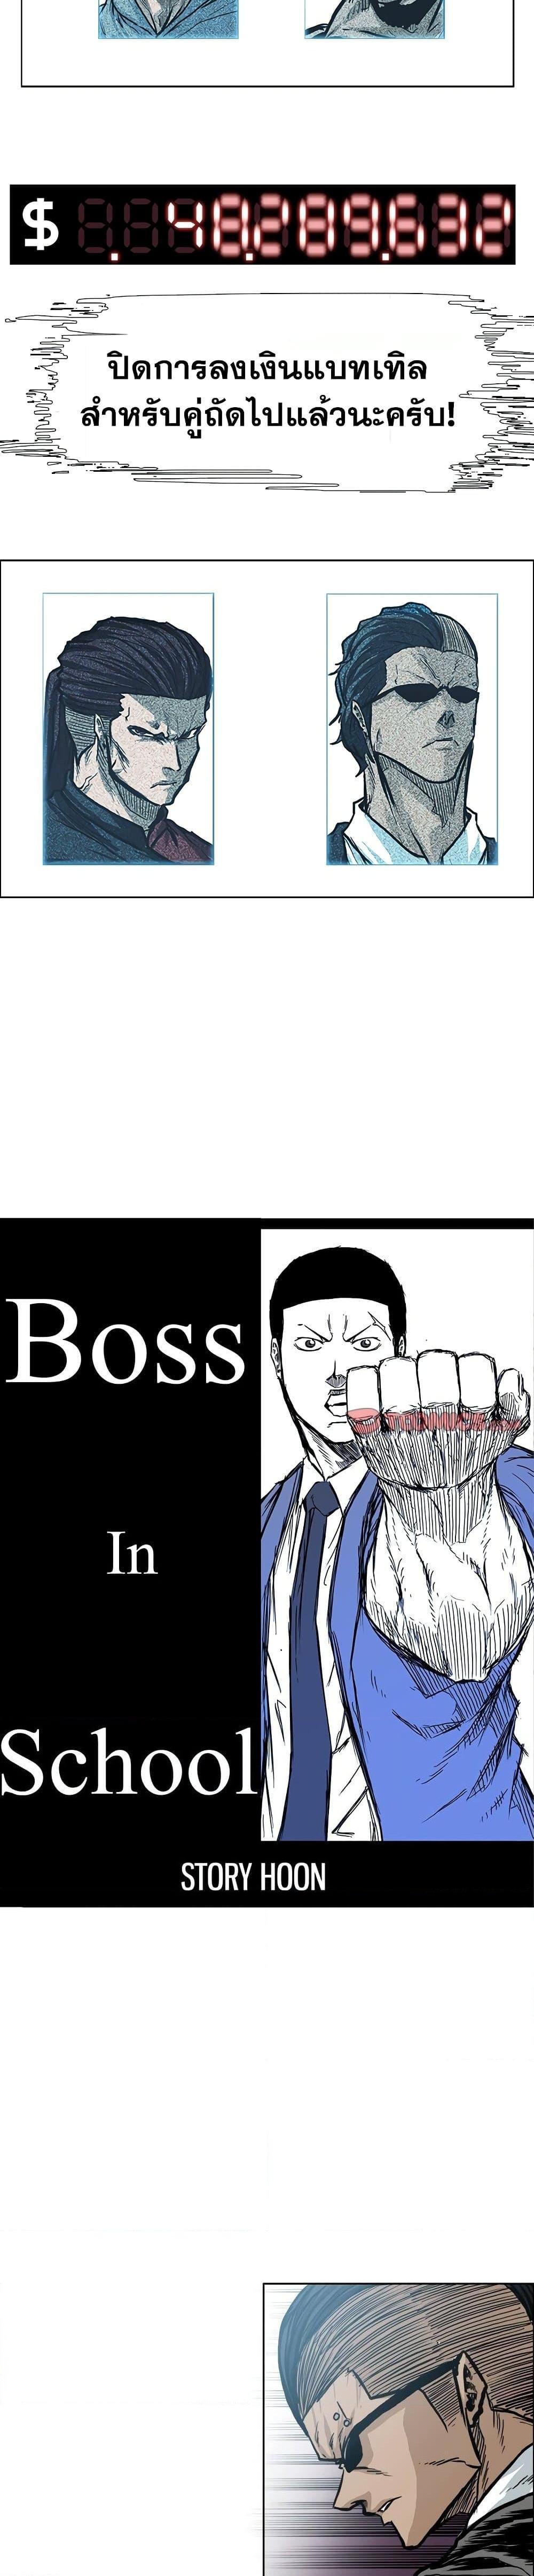 Boss in School 99 13